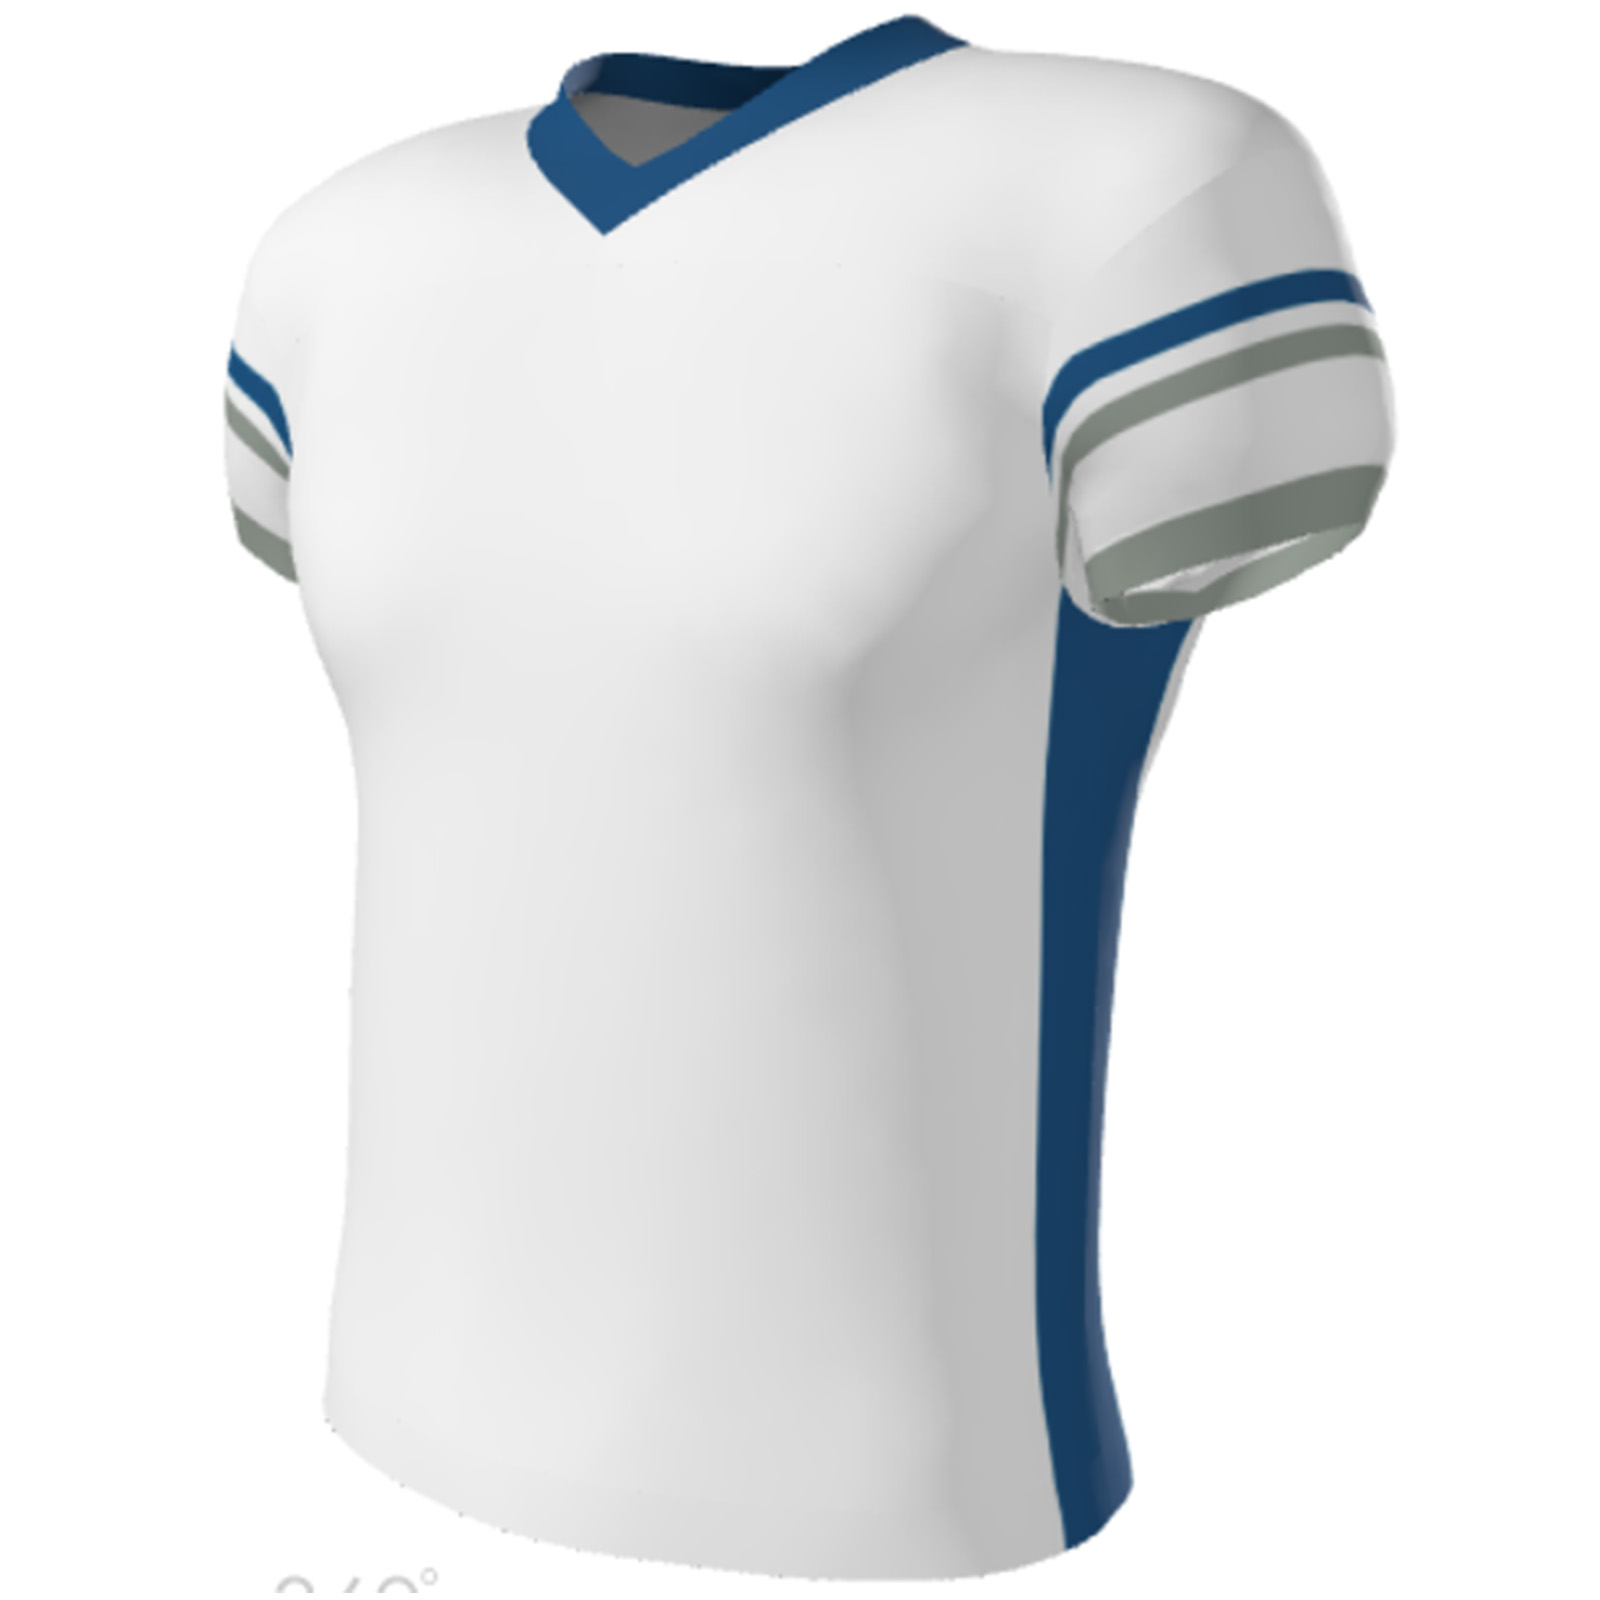 football-apparel-practice-jerseys-custom-jerseys